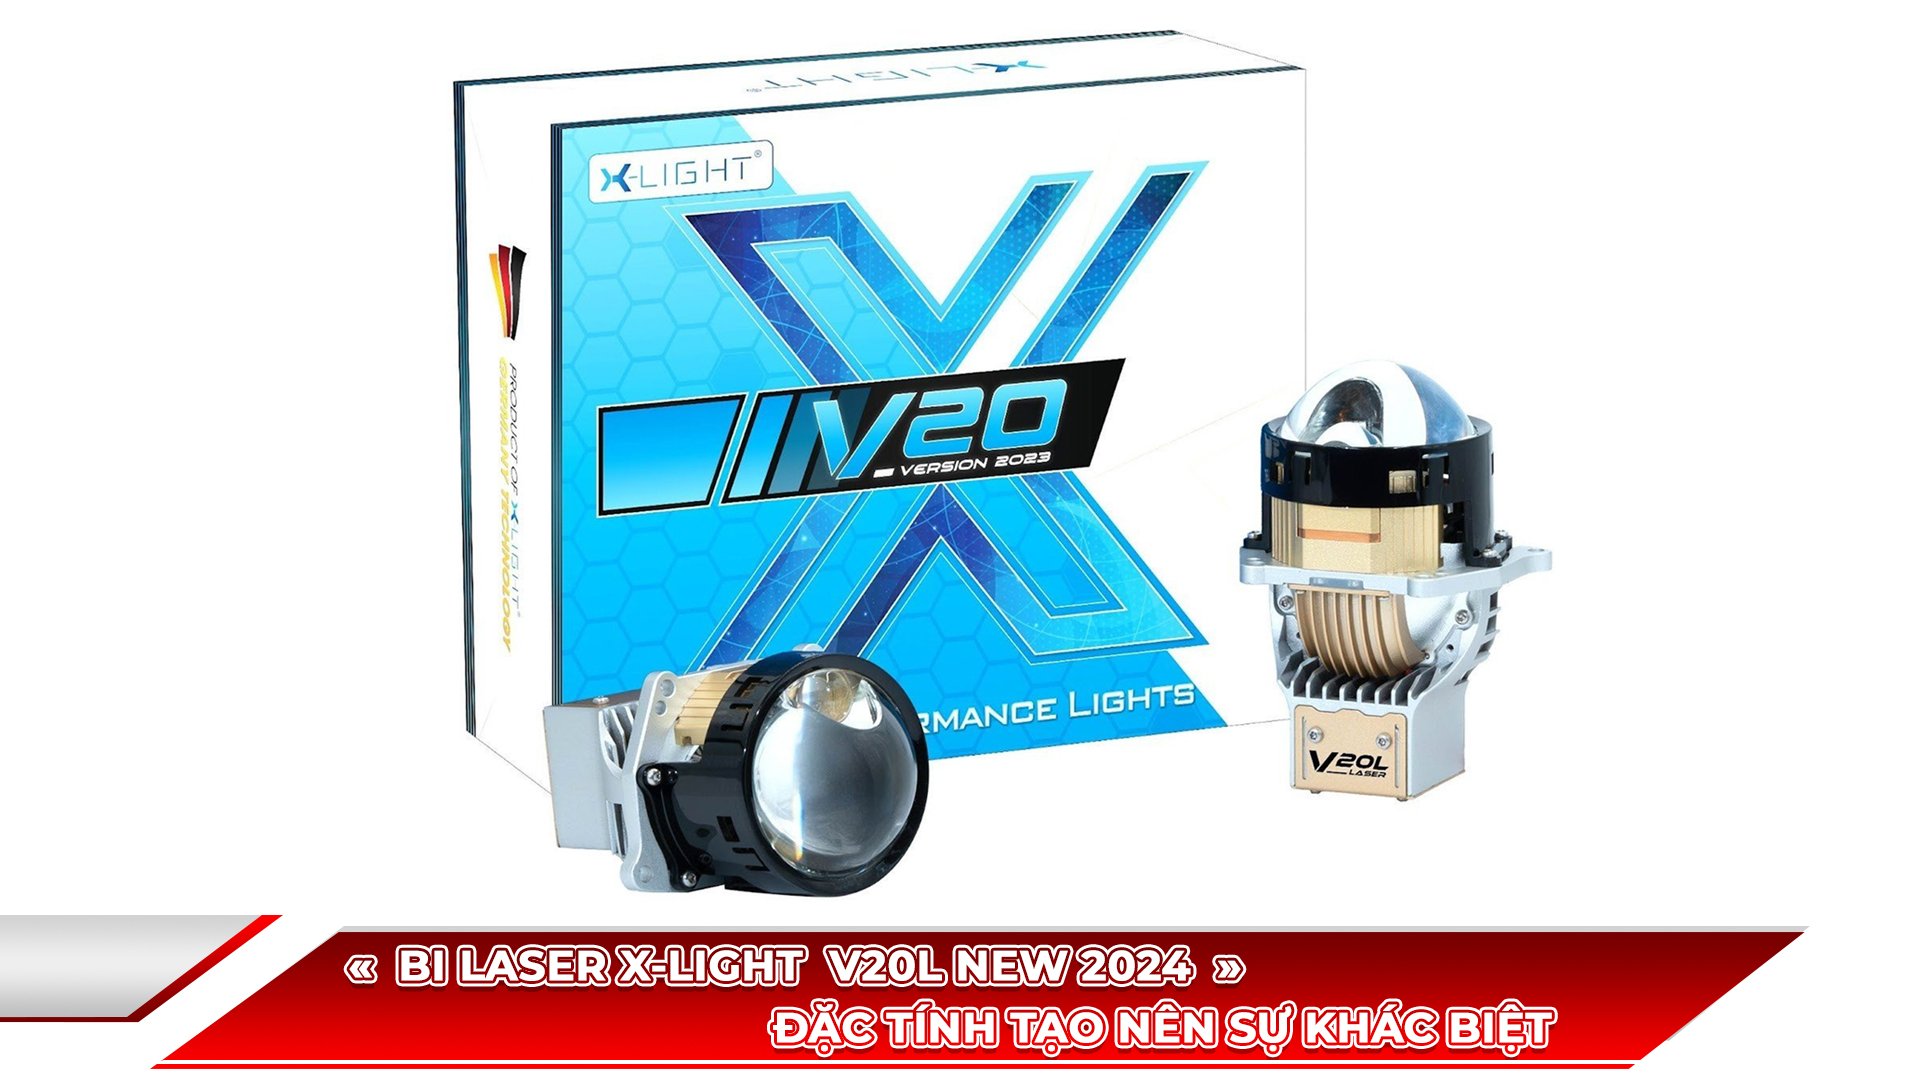 Bi Laser X-Light V20L New 2024 Đặc Tính Tạo Nên Sự Khác Biệt